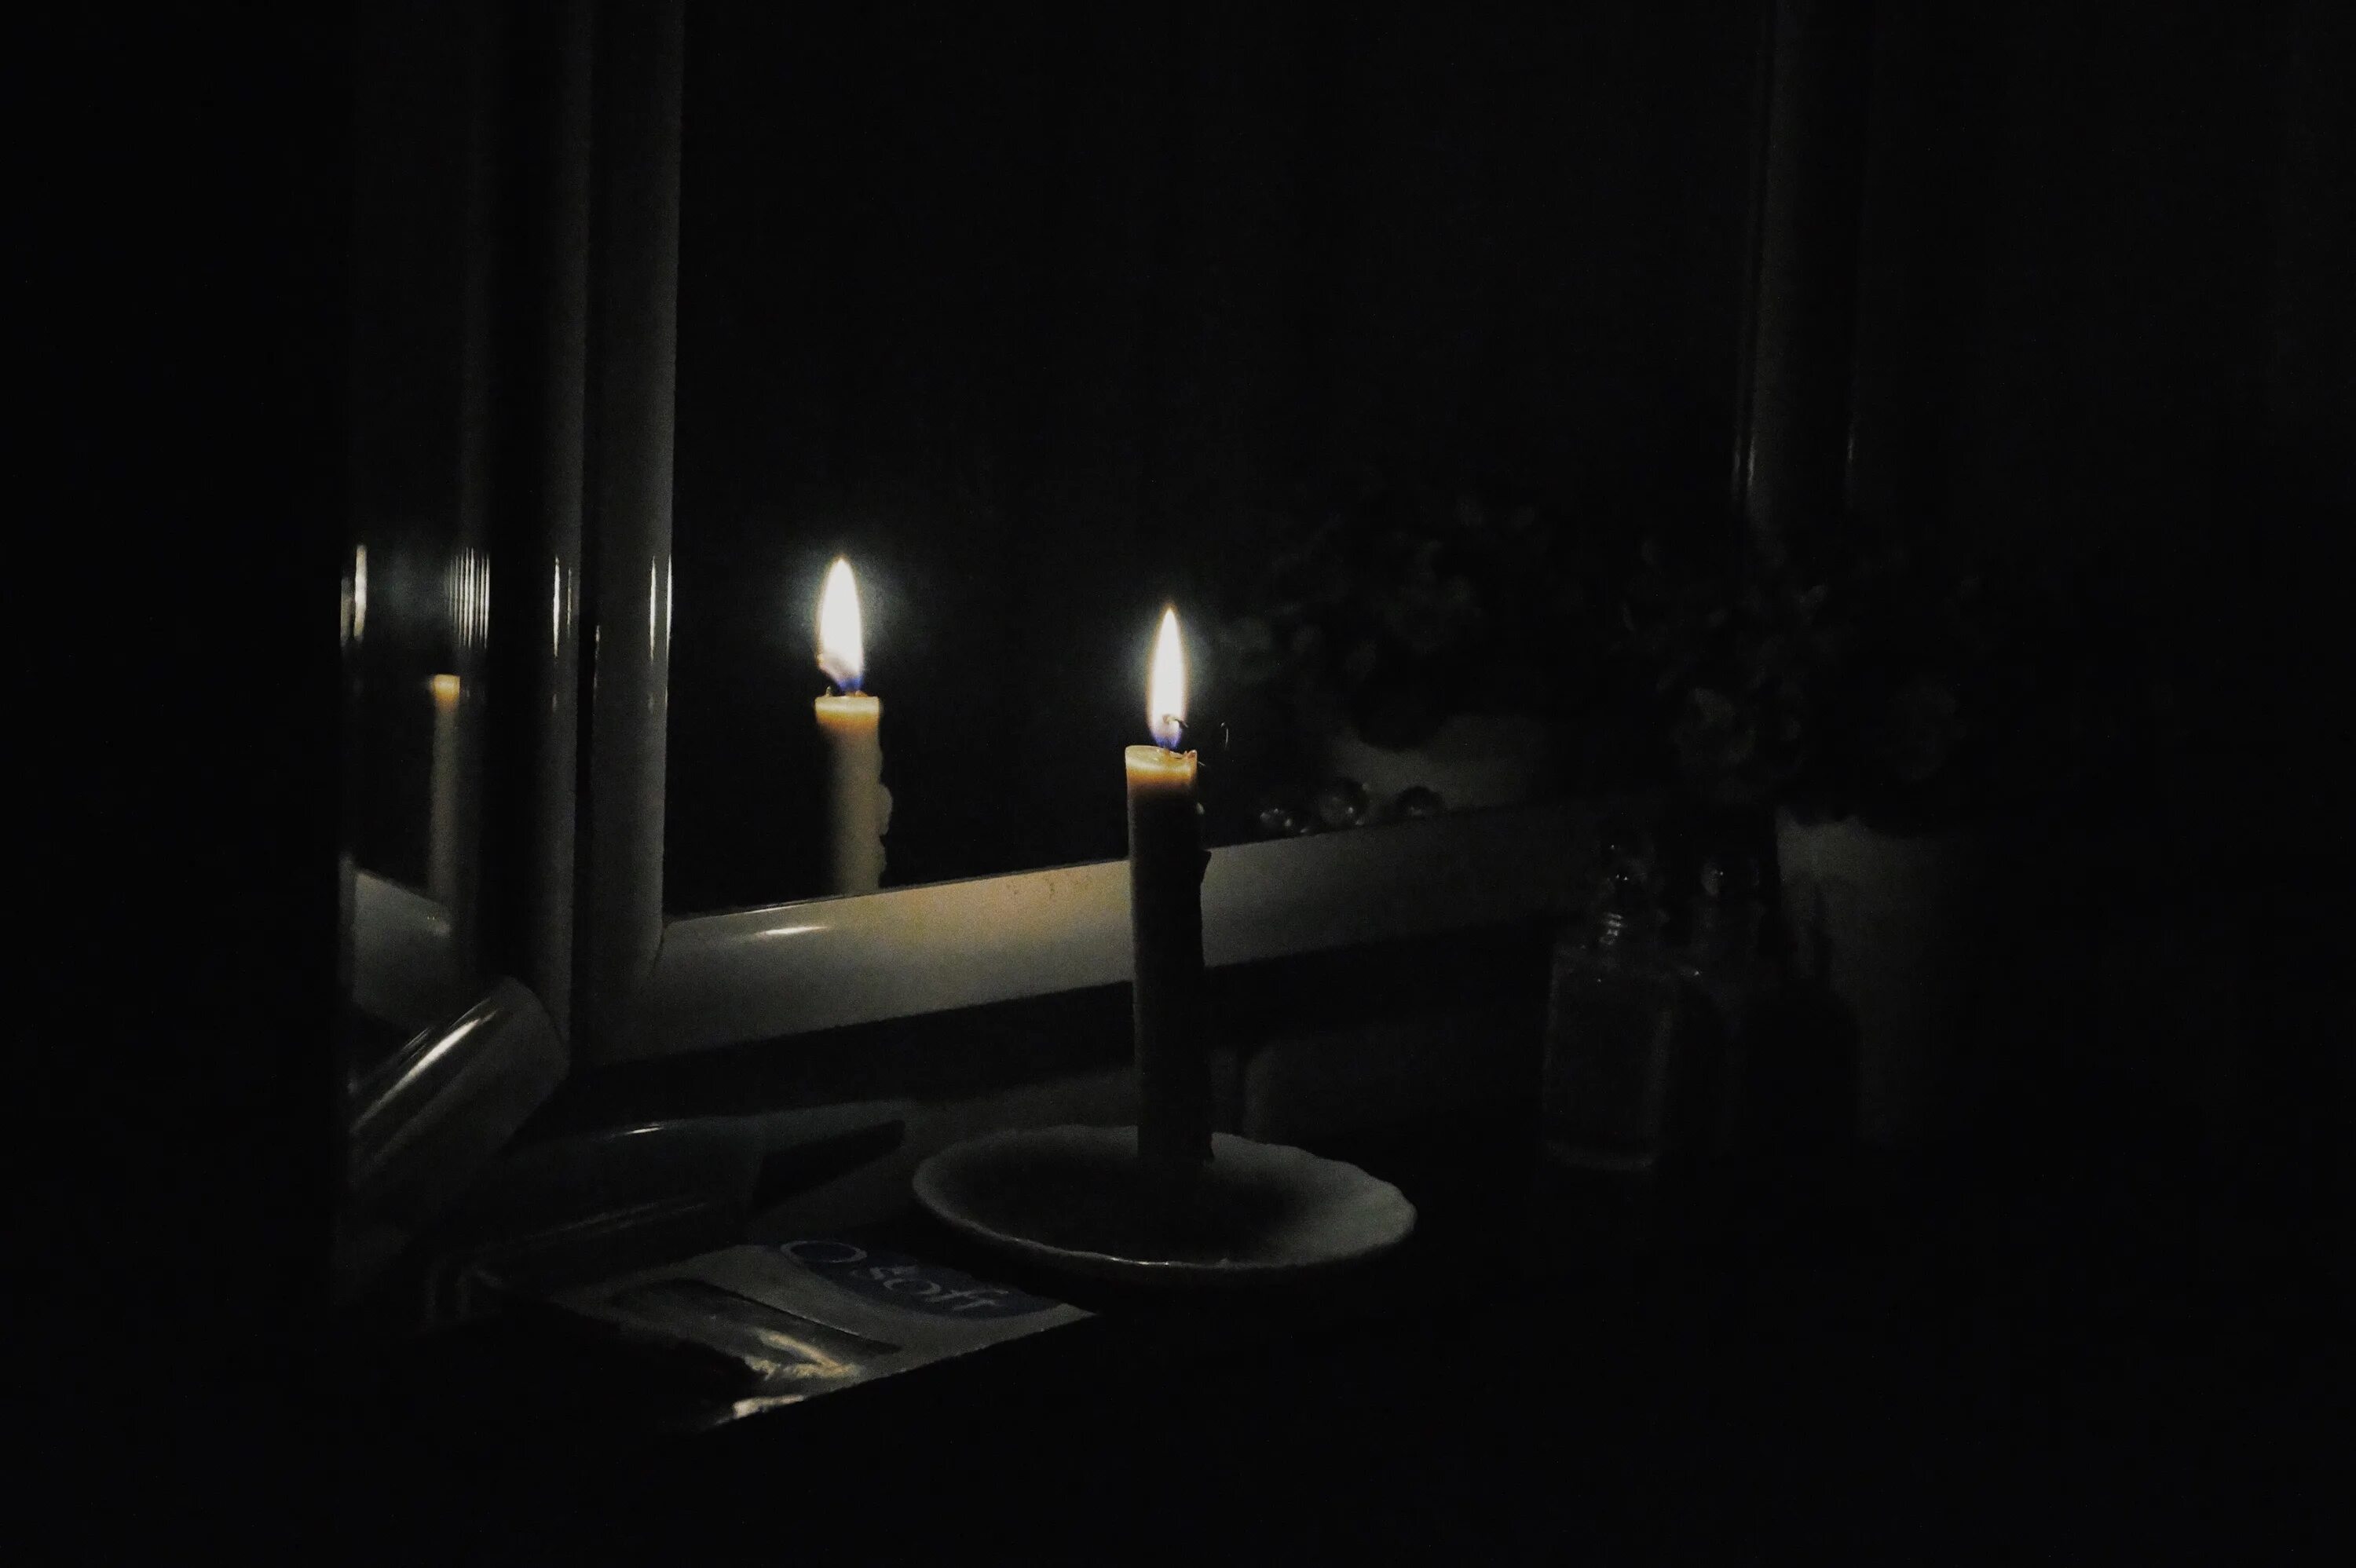 На столе стоит свеча которая отражается. Темная комната со свечами. Свеча в темноте. Комната со свечами. Человек со свечкой в темноте.